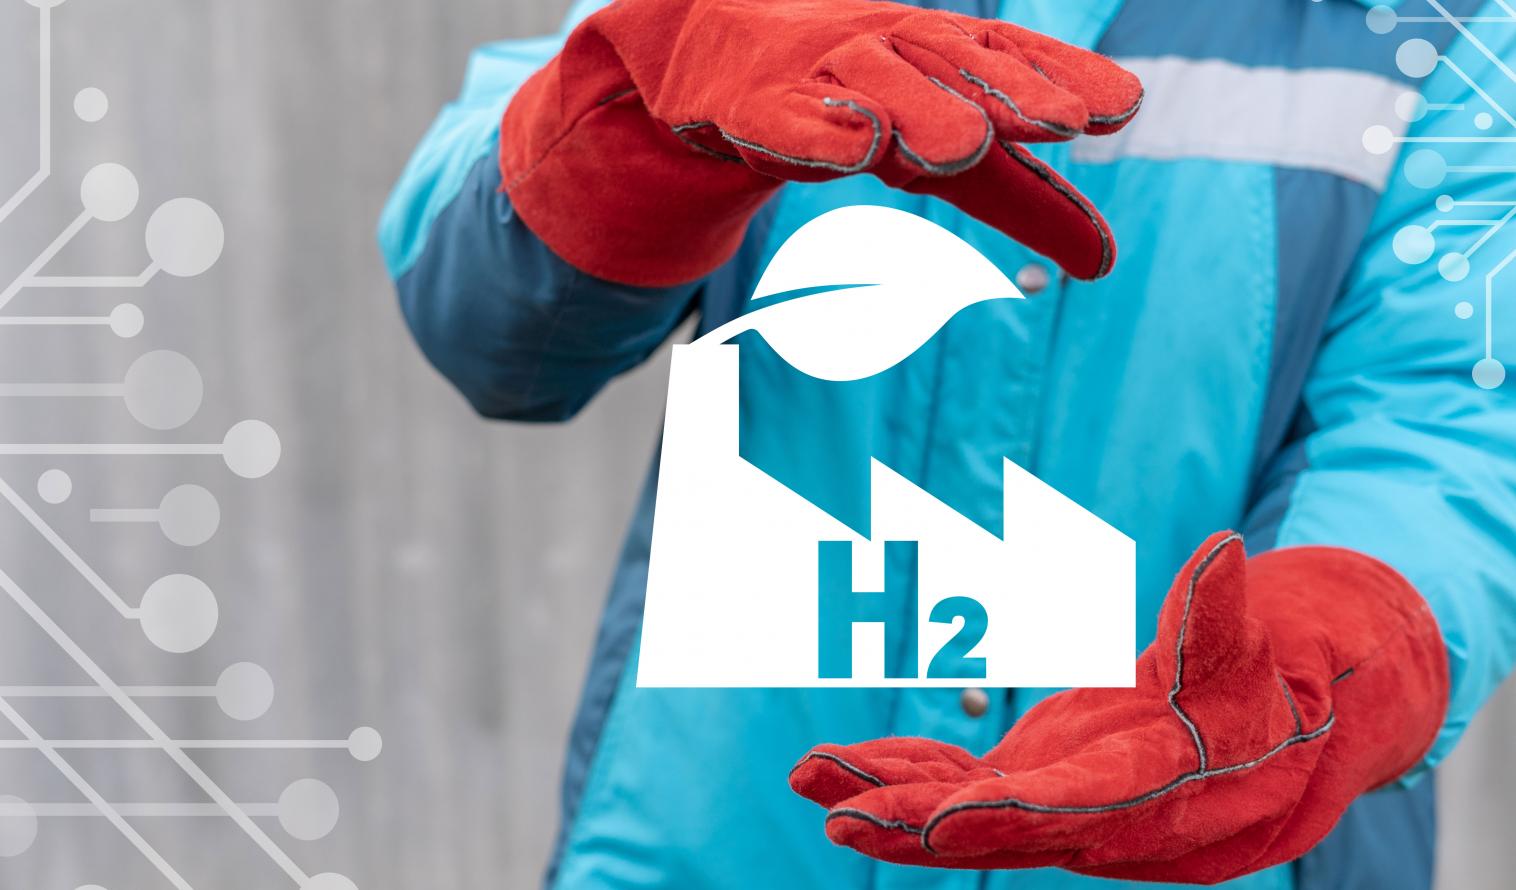 Arbeiter mit roten Handschuhen hält virtuelles H2 Logo zwischen seinen Händen.